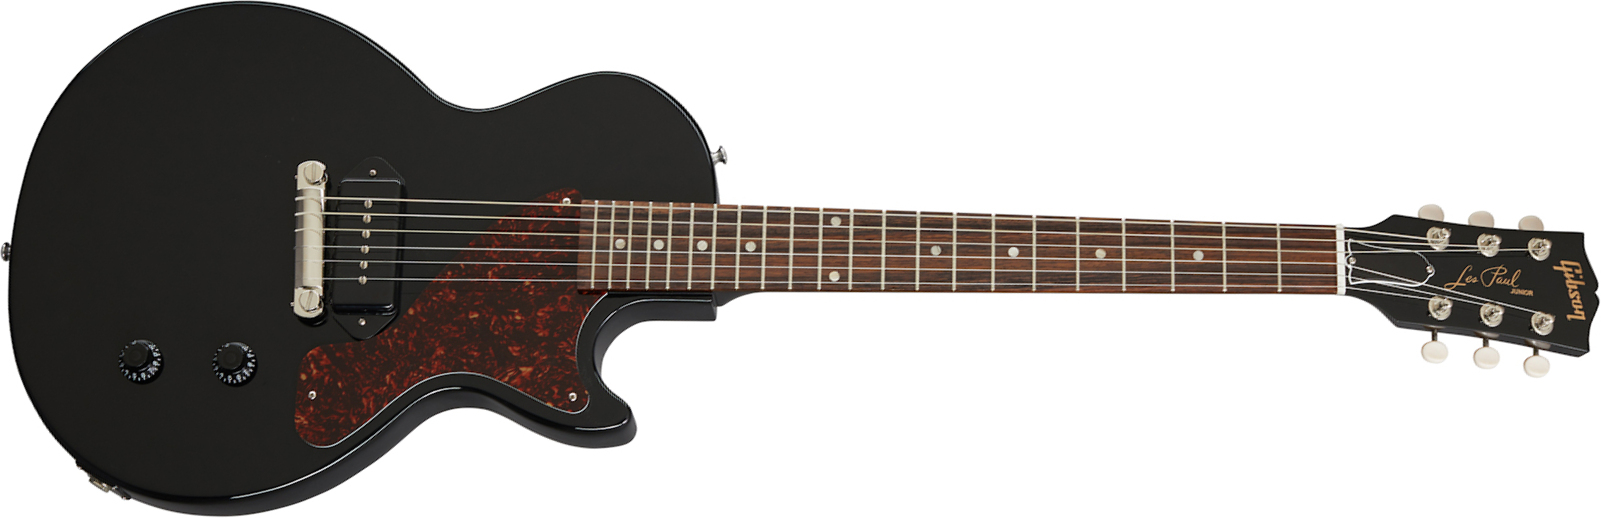 Gibson Les Paul Junior Original 2020 P90 Ht Rw - Ebony - Enkel gesneden elektrische gitaar - Main picture